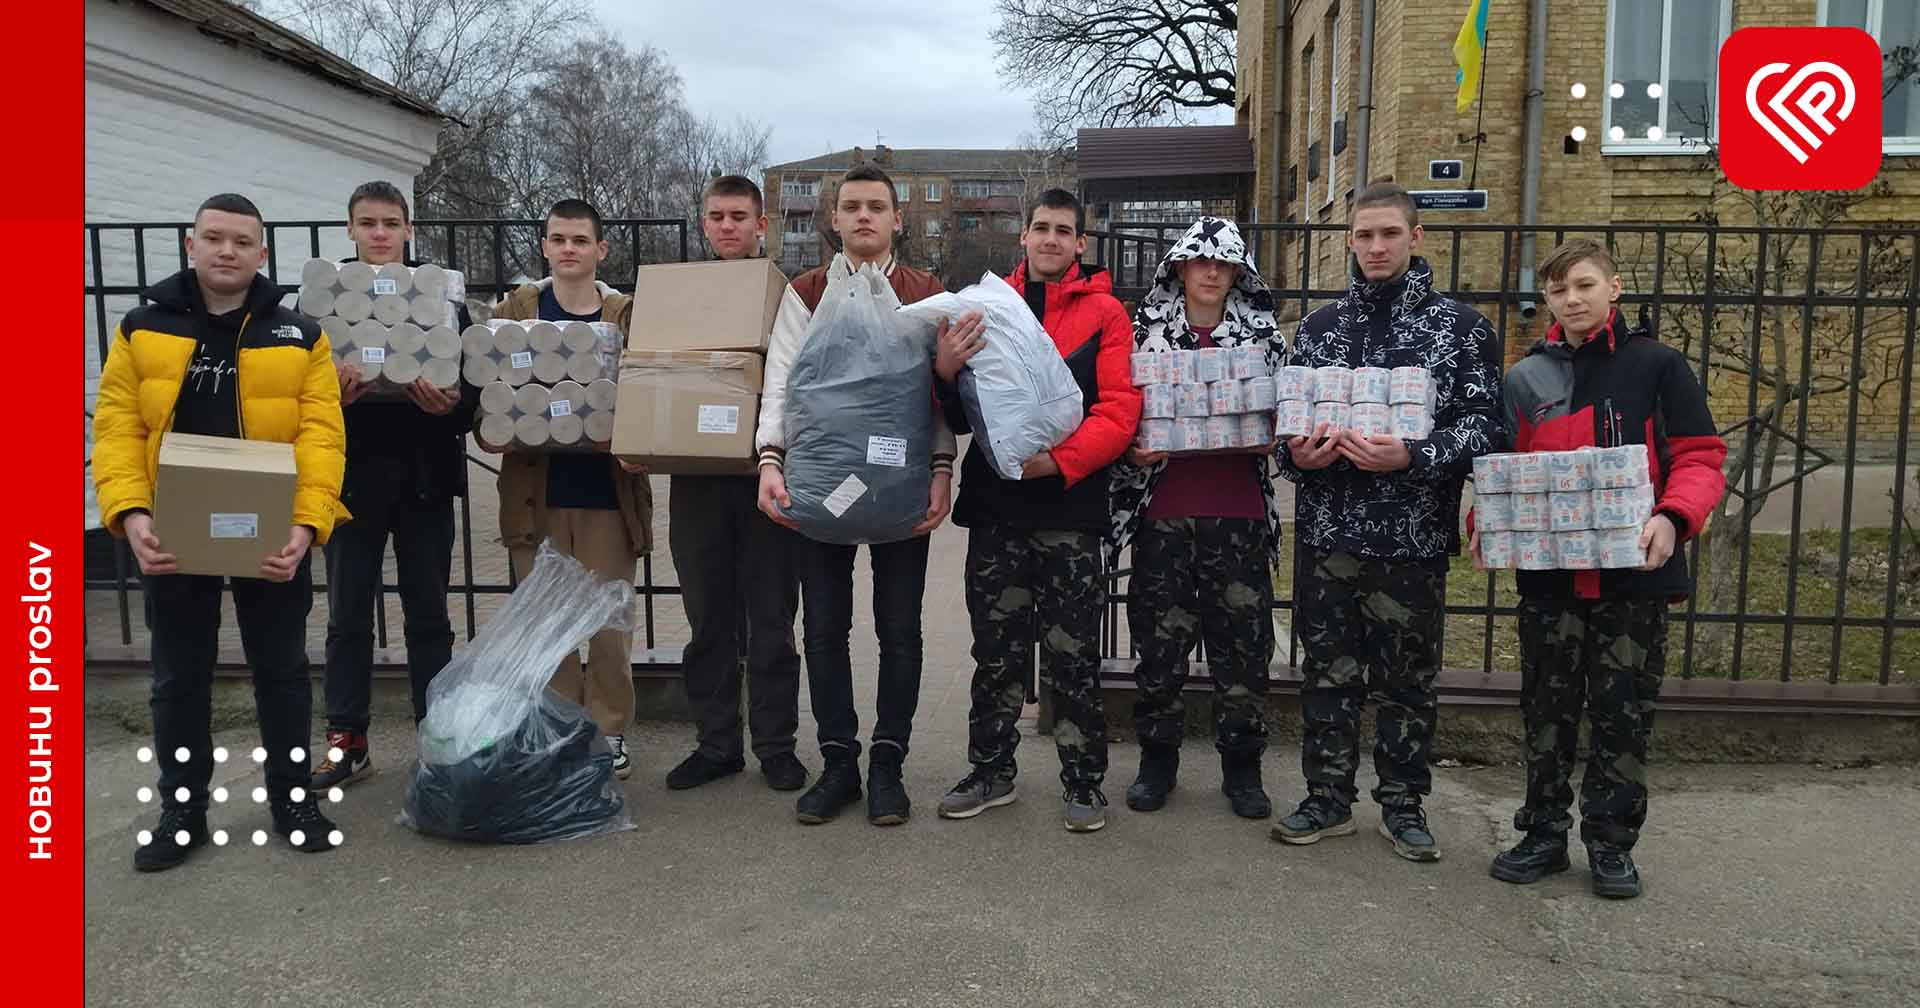 Колектив переяславської гімназії №1 зібрав понад 30 тисяч гривень для звільнених з полону військовослужбовців: на ці кошти придбали необхідні речі